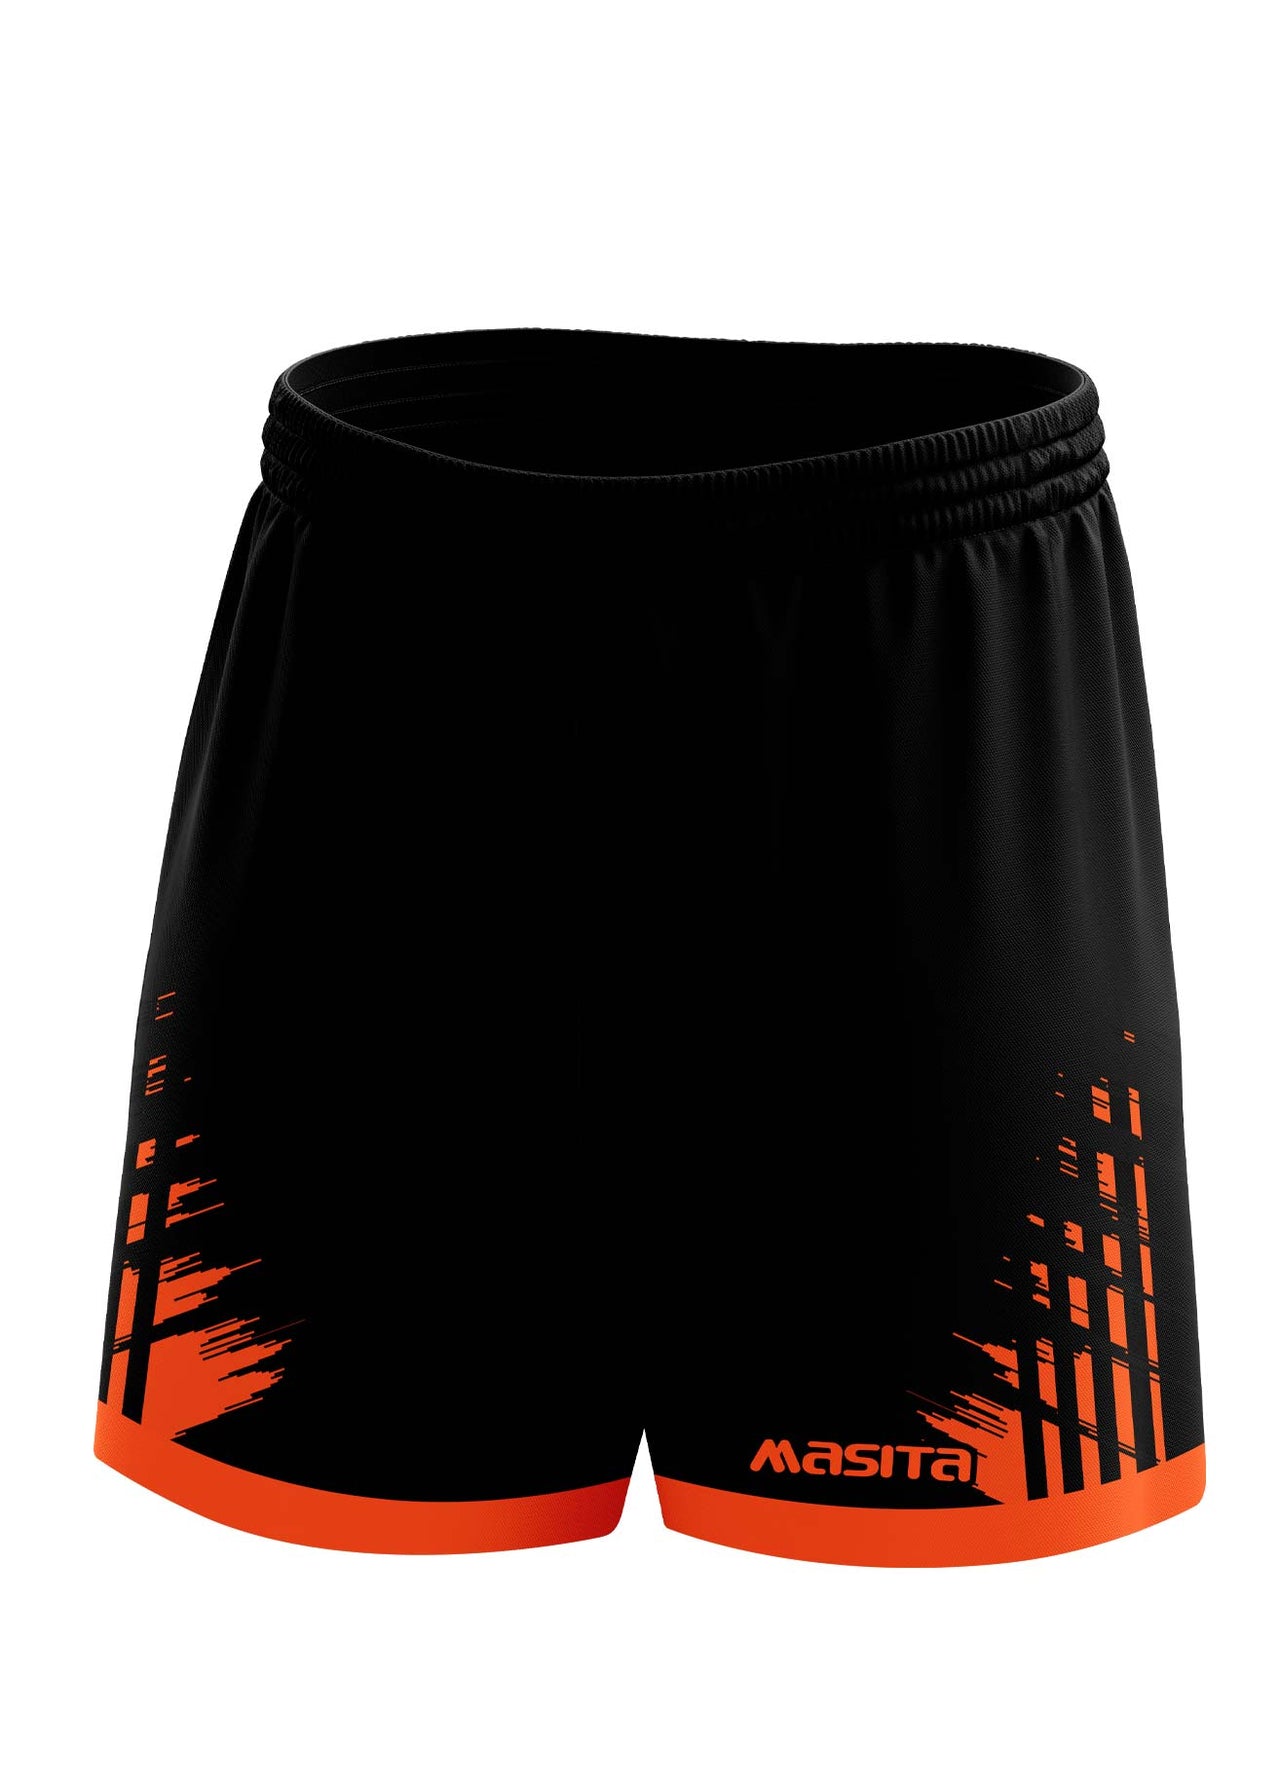 Barkley Gaelic Shorts Black/Orange Adult